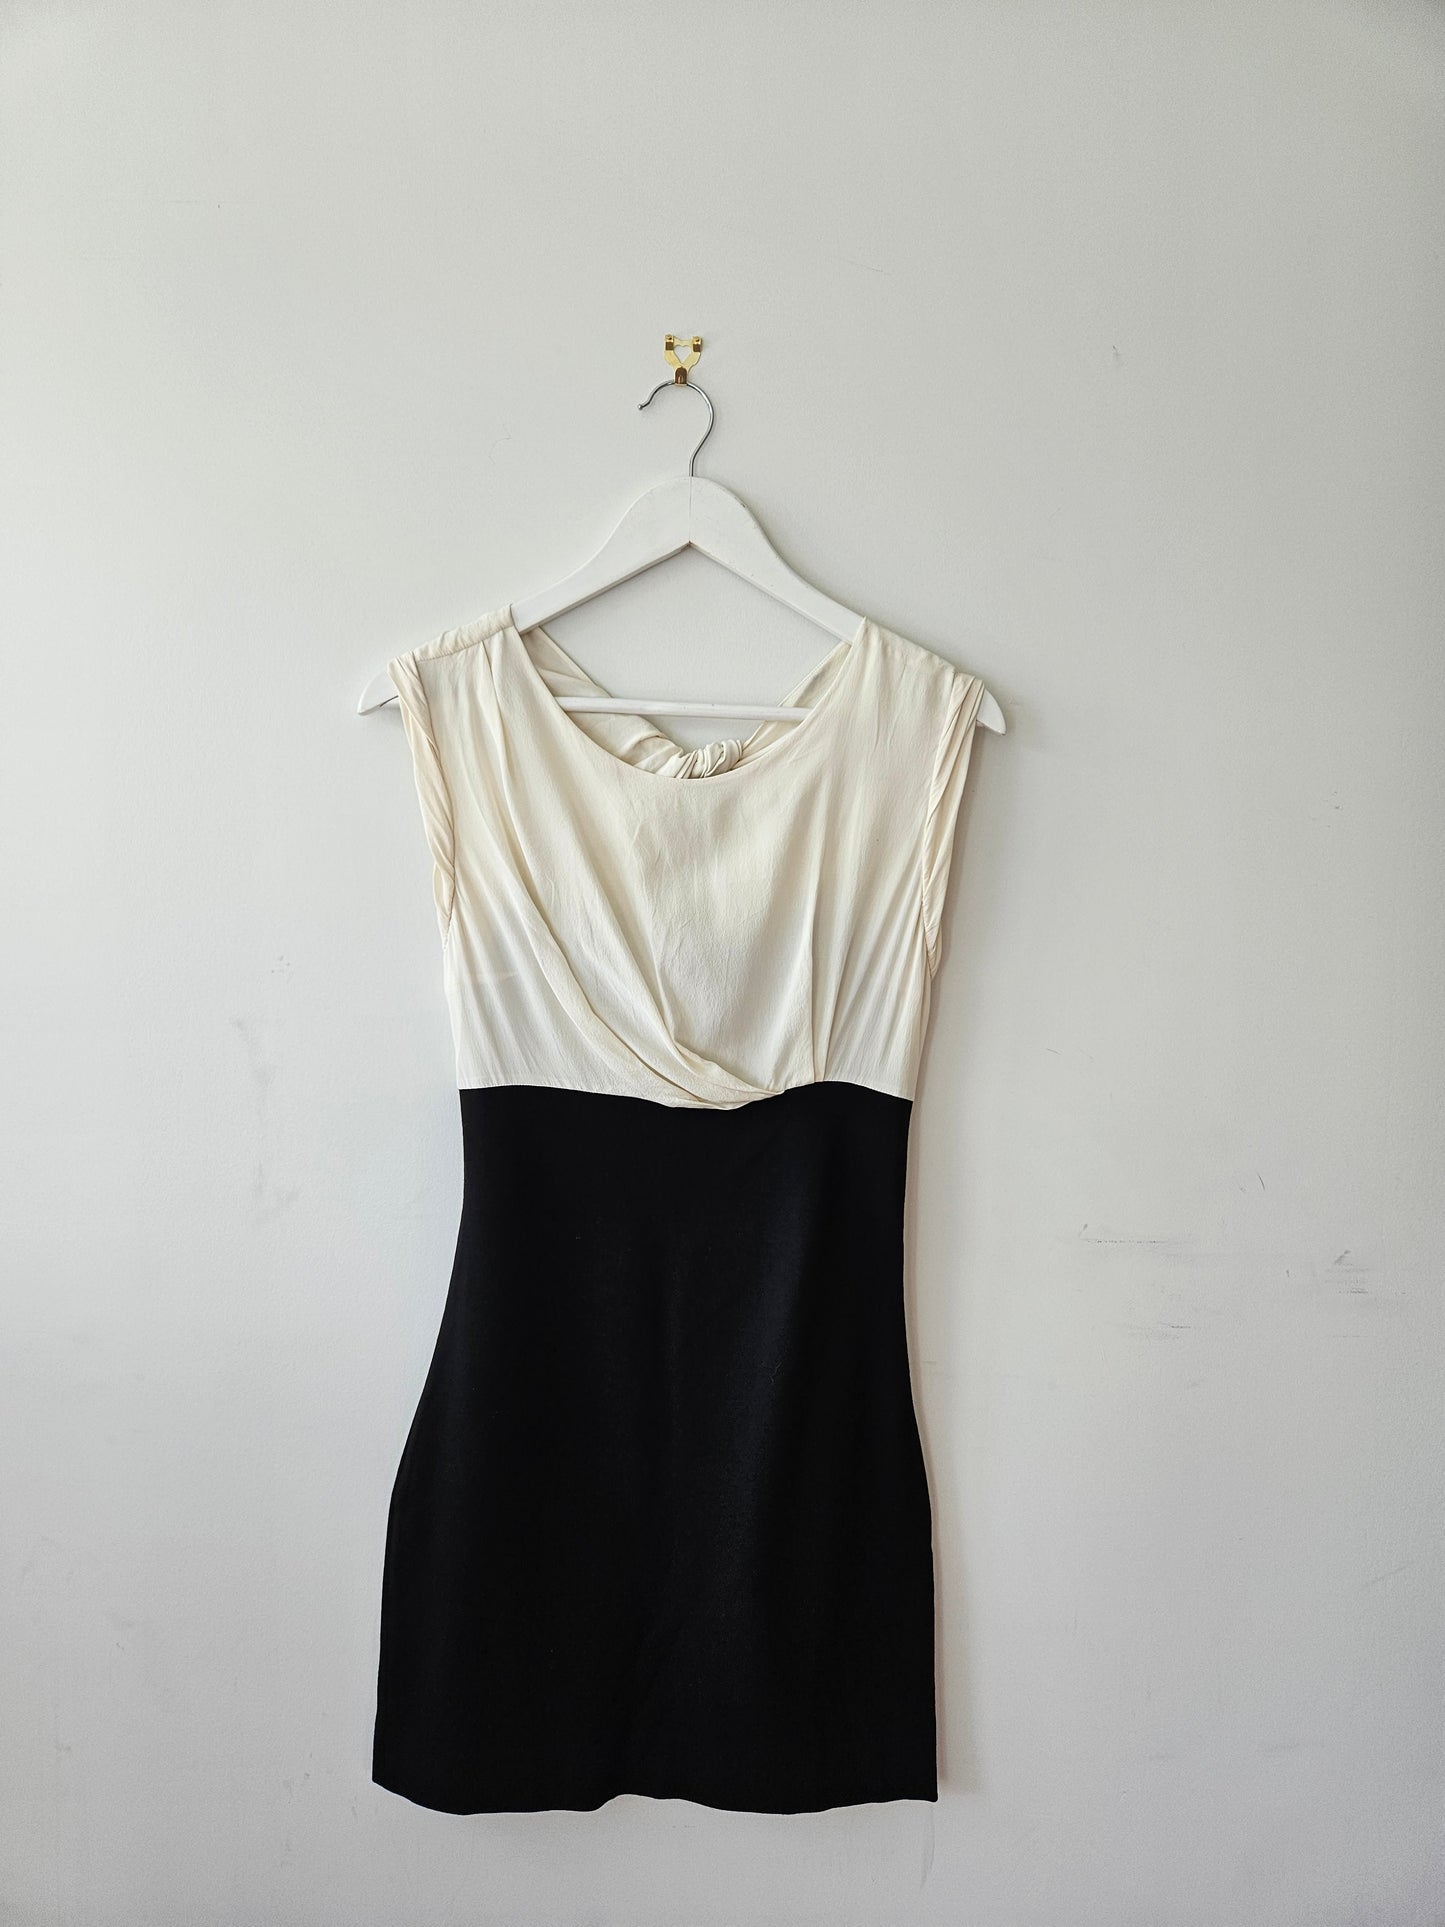 SANDRO Paris Black and White Mini Dress